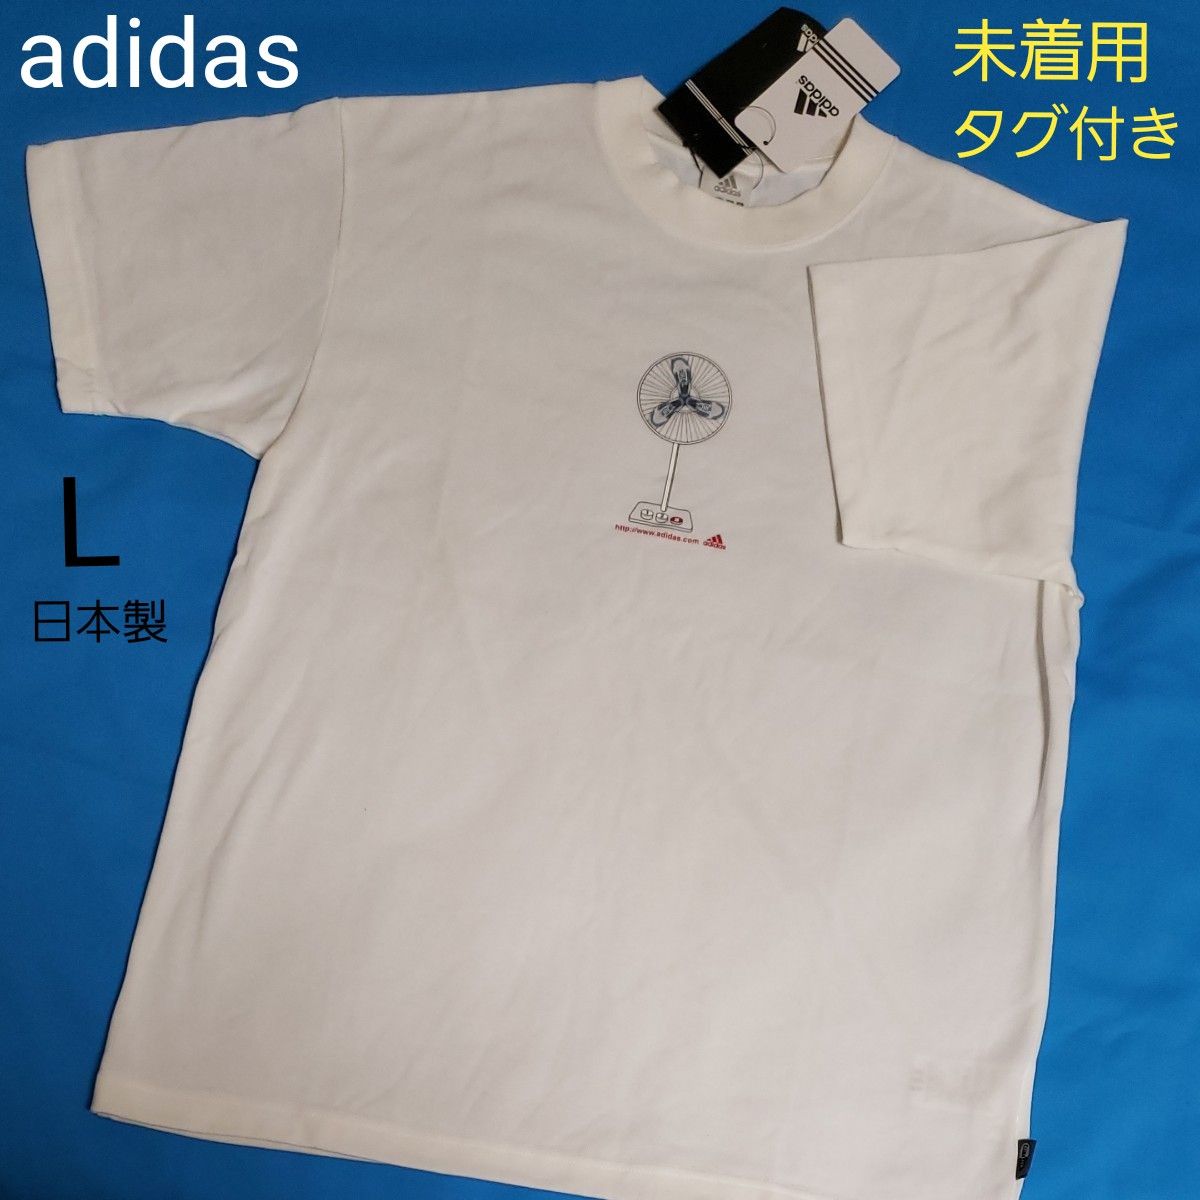 未着用 adidas Tシャツ 半袖 白 ホワイト L スニーカー ファン 扇風機 プリント 日本製 アディダス タグ付き